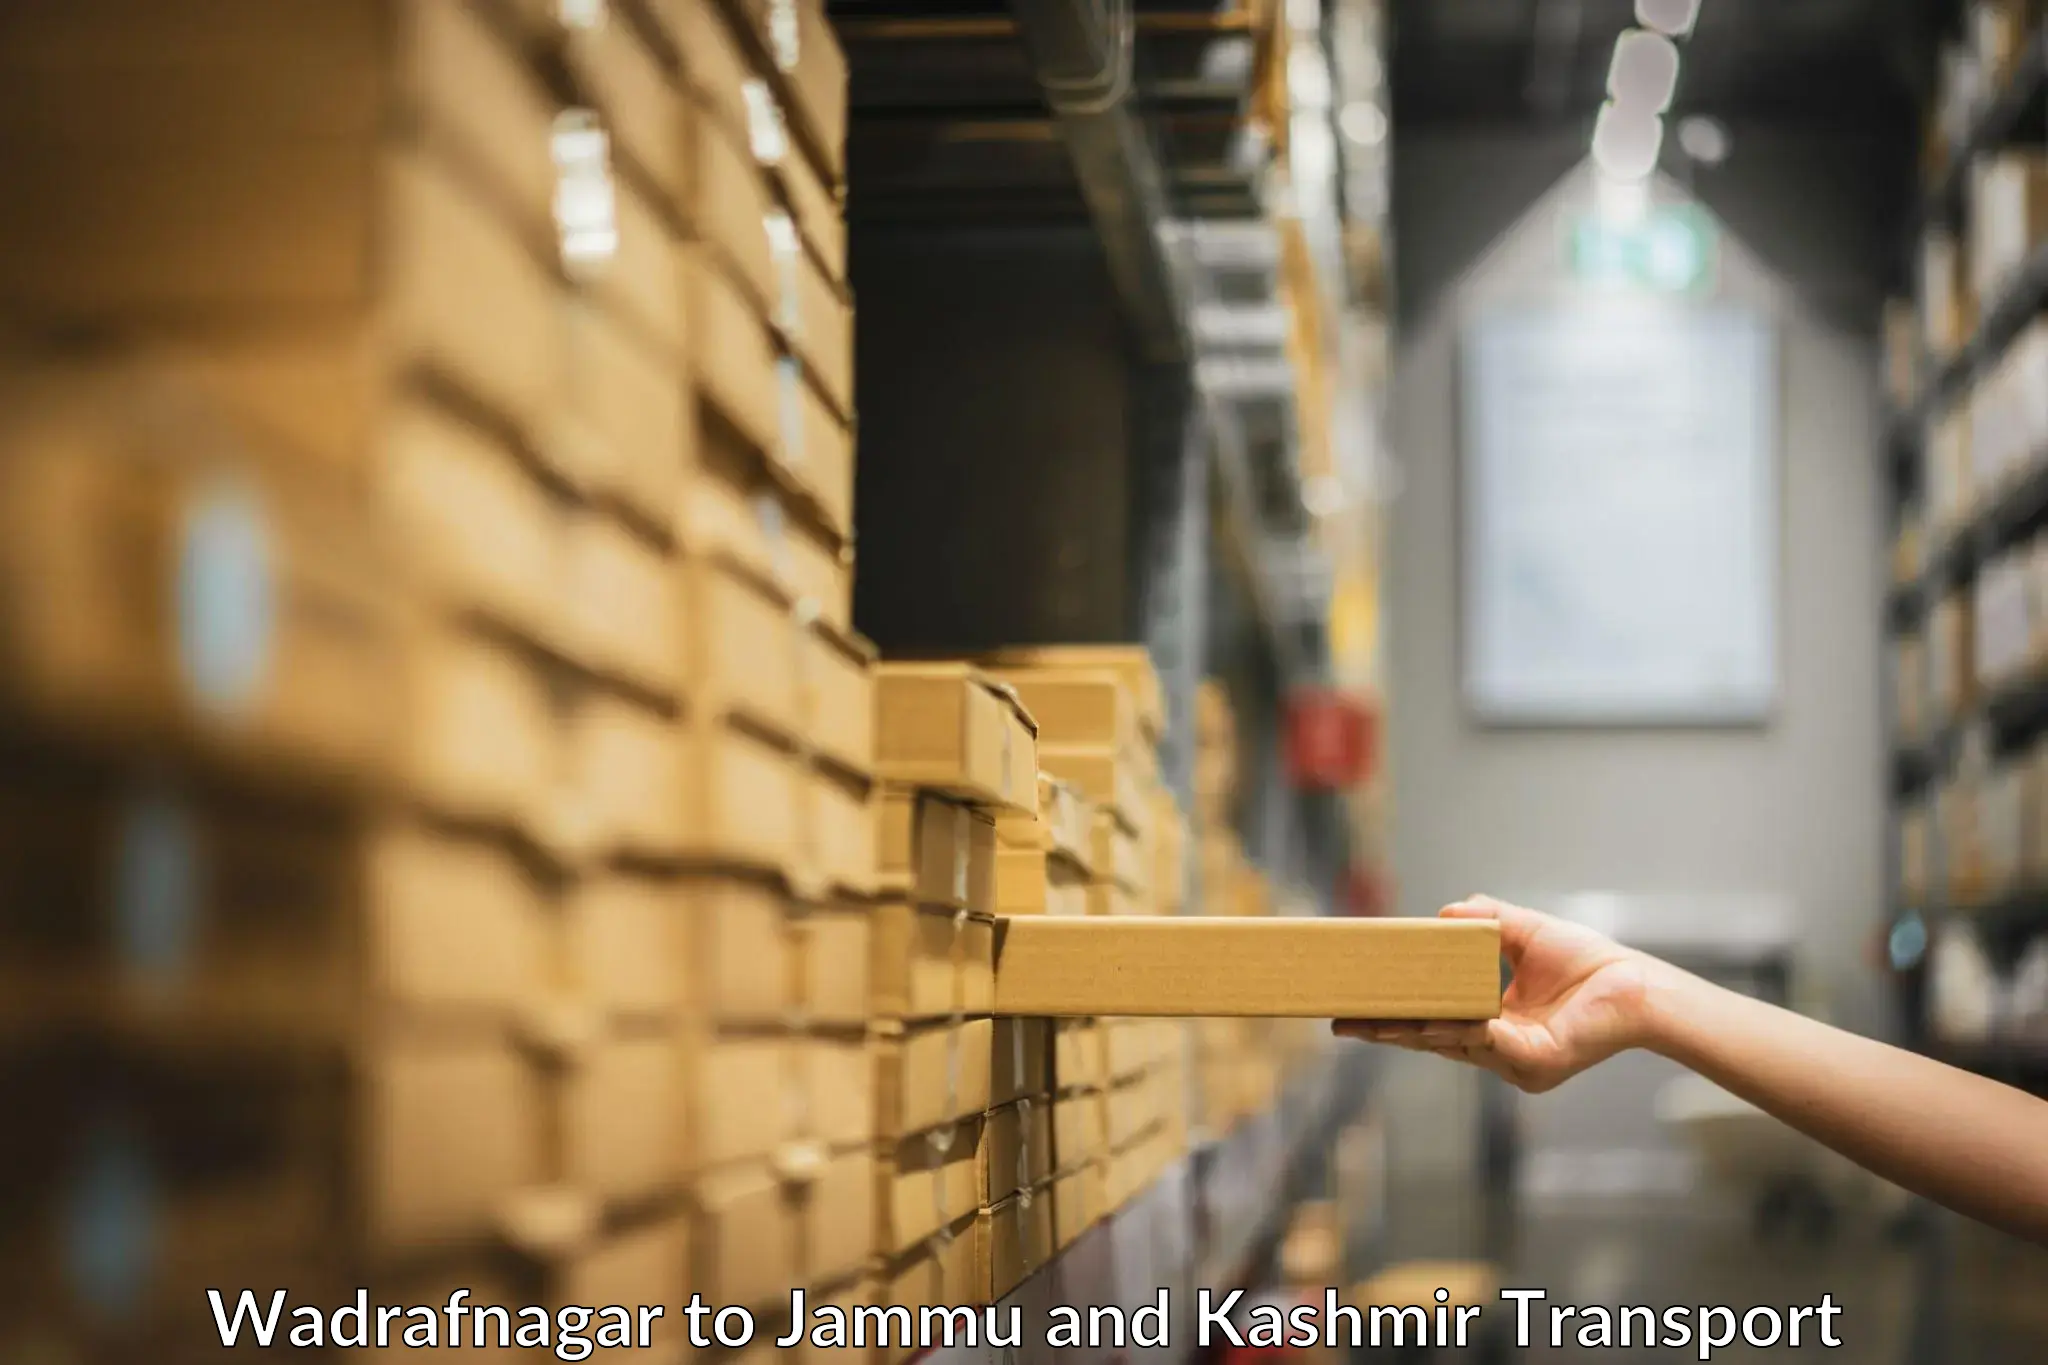 Transportation services Wadrafnagar to Srinagar Kashmir